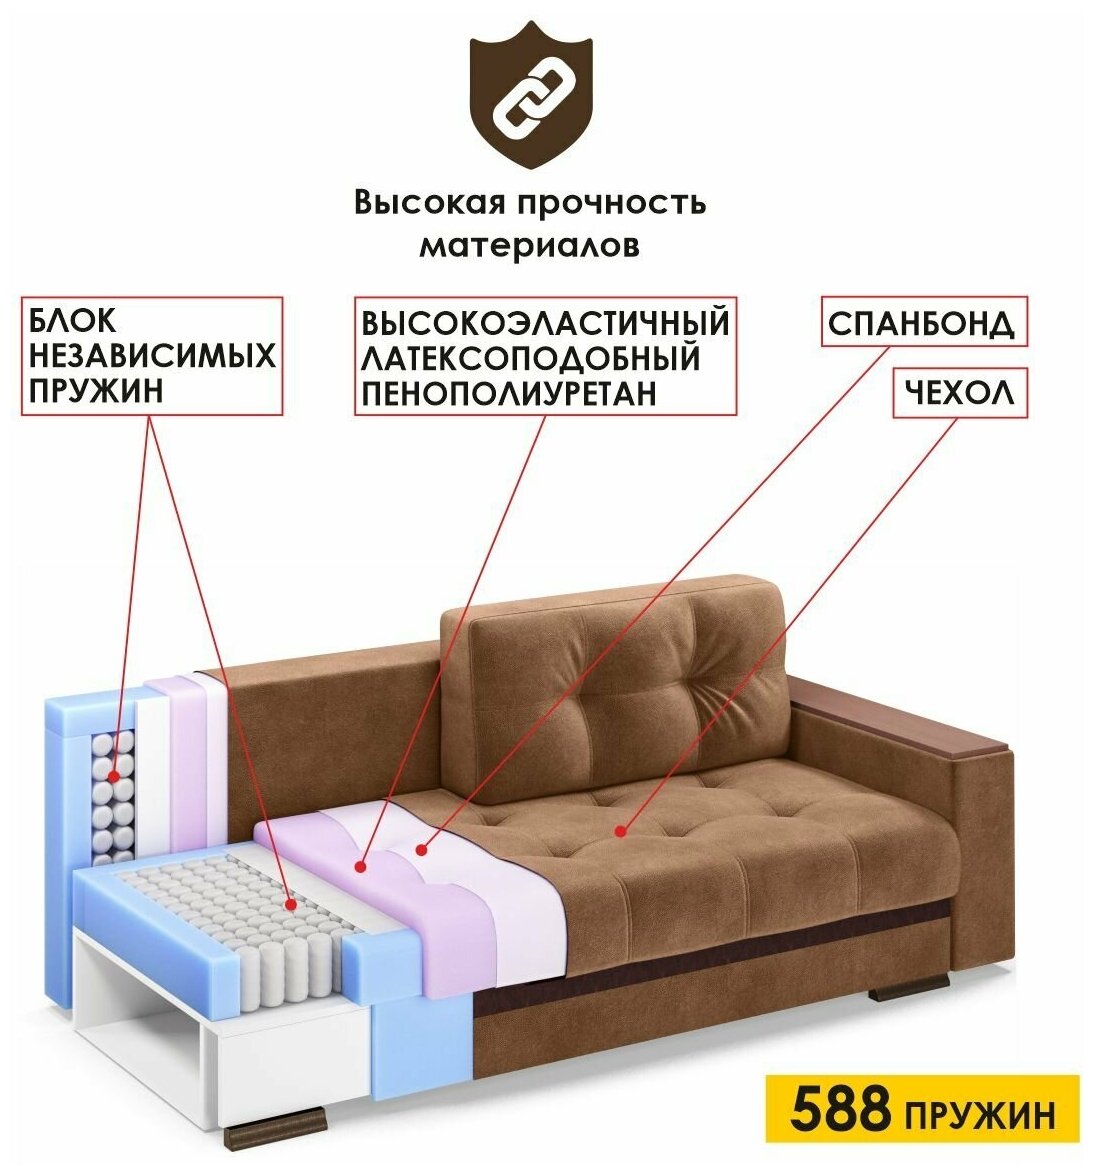 Диван-кровать Николетти, еврокнижка 231х104х86 см, спальное место 163х200 см, независимый пружинный блок, коричневый , АМИ мебель